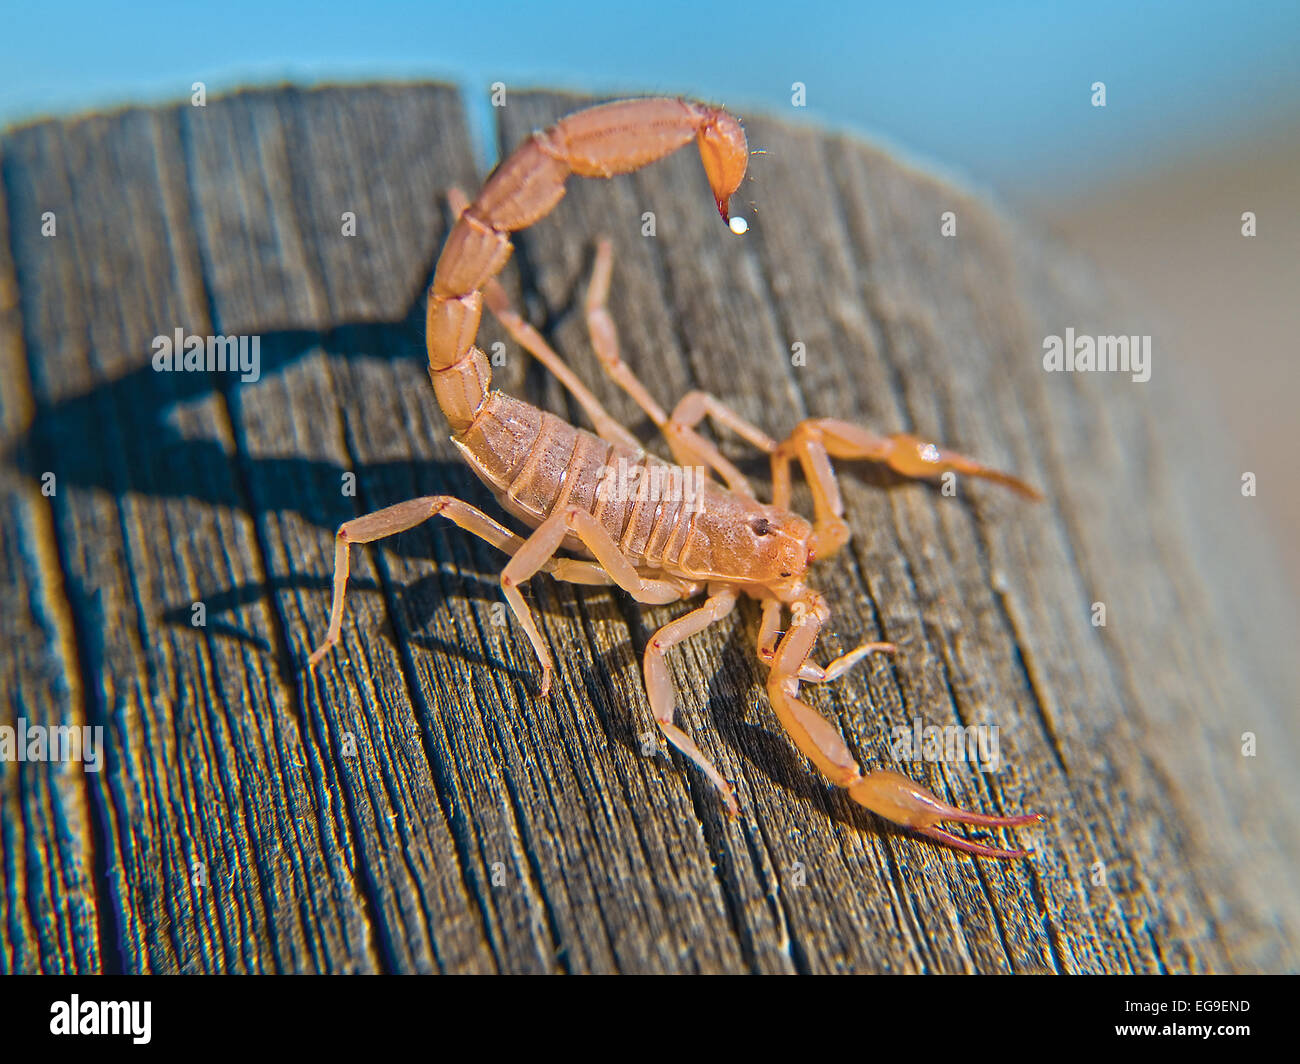 Bark scorpion on a log, Arizona, United States Stock Photo